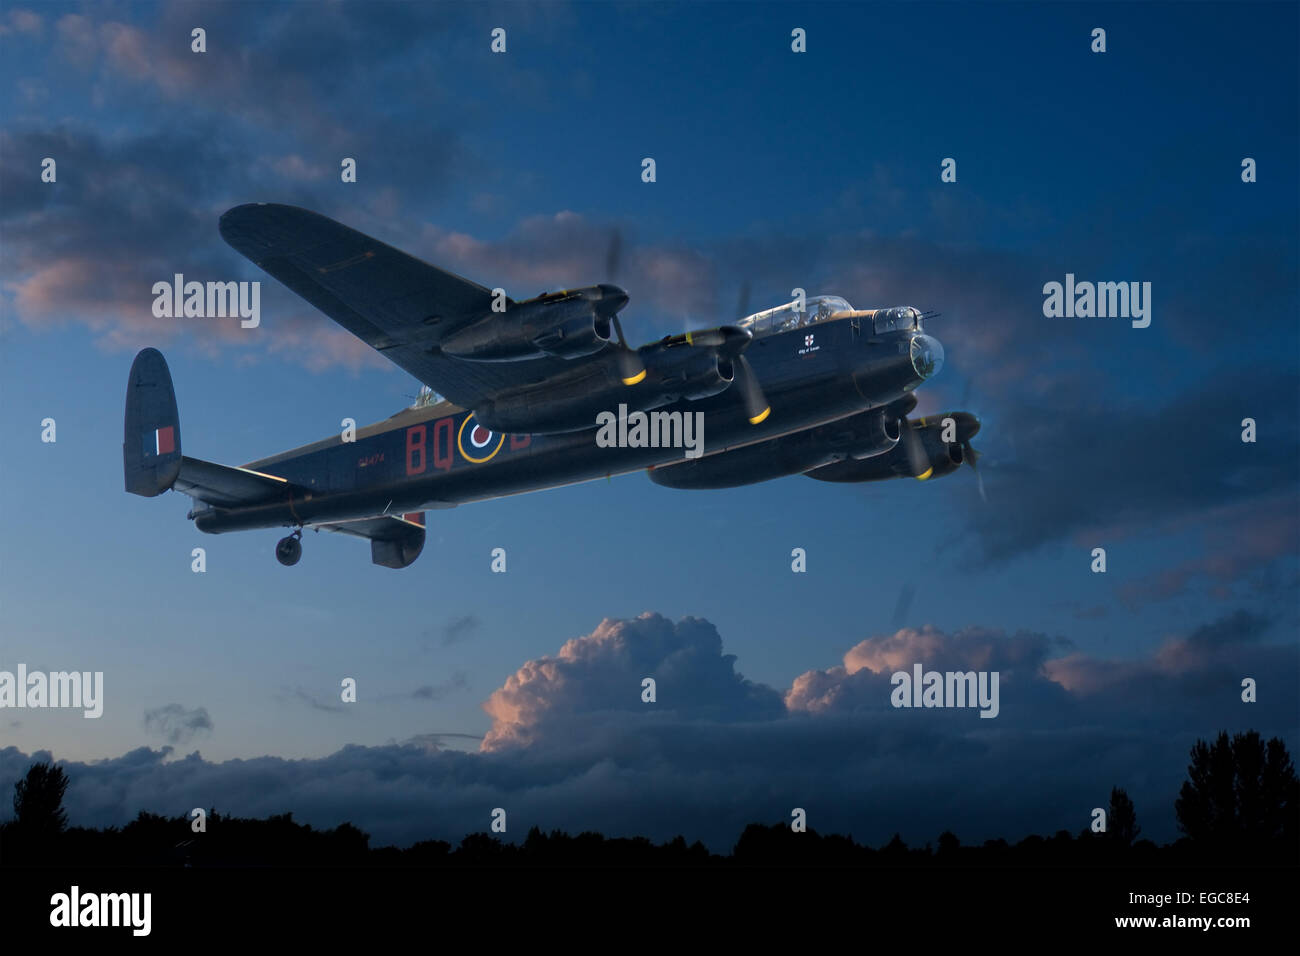 Avro Lancaster du Battle of Britain Memorial Flight, superposée sur un ciel au crépuscule, comme si de décoller sur un raid de nuit. Banque D'Images